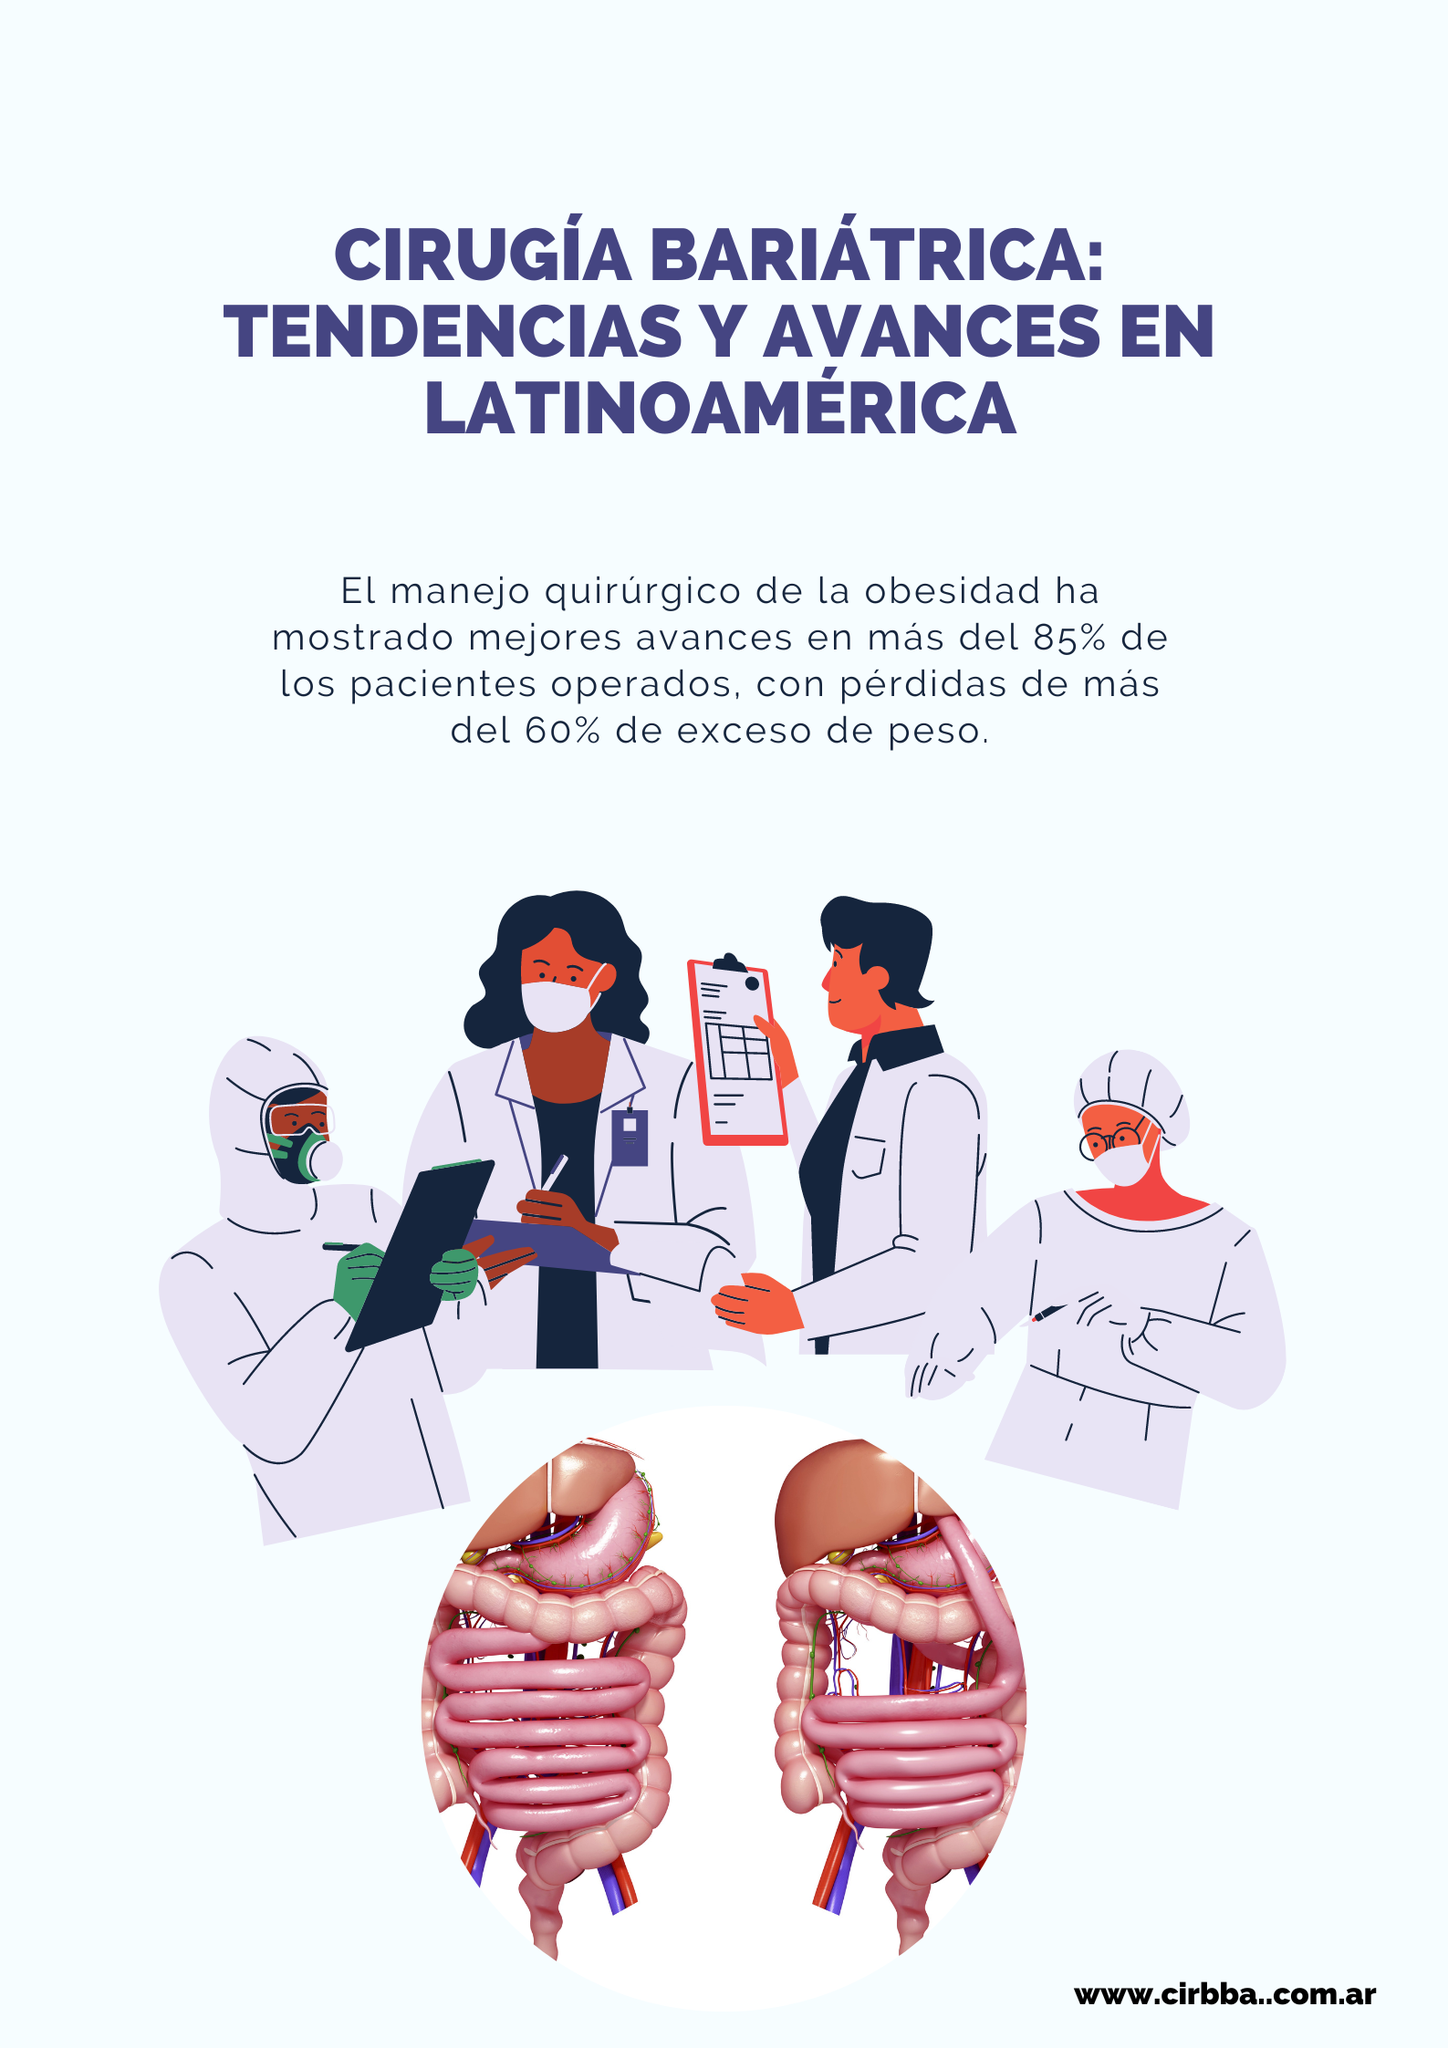 Tendencias y avances de la cirugía bariátrica en latinoamérica